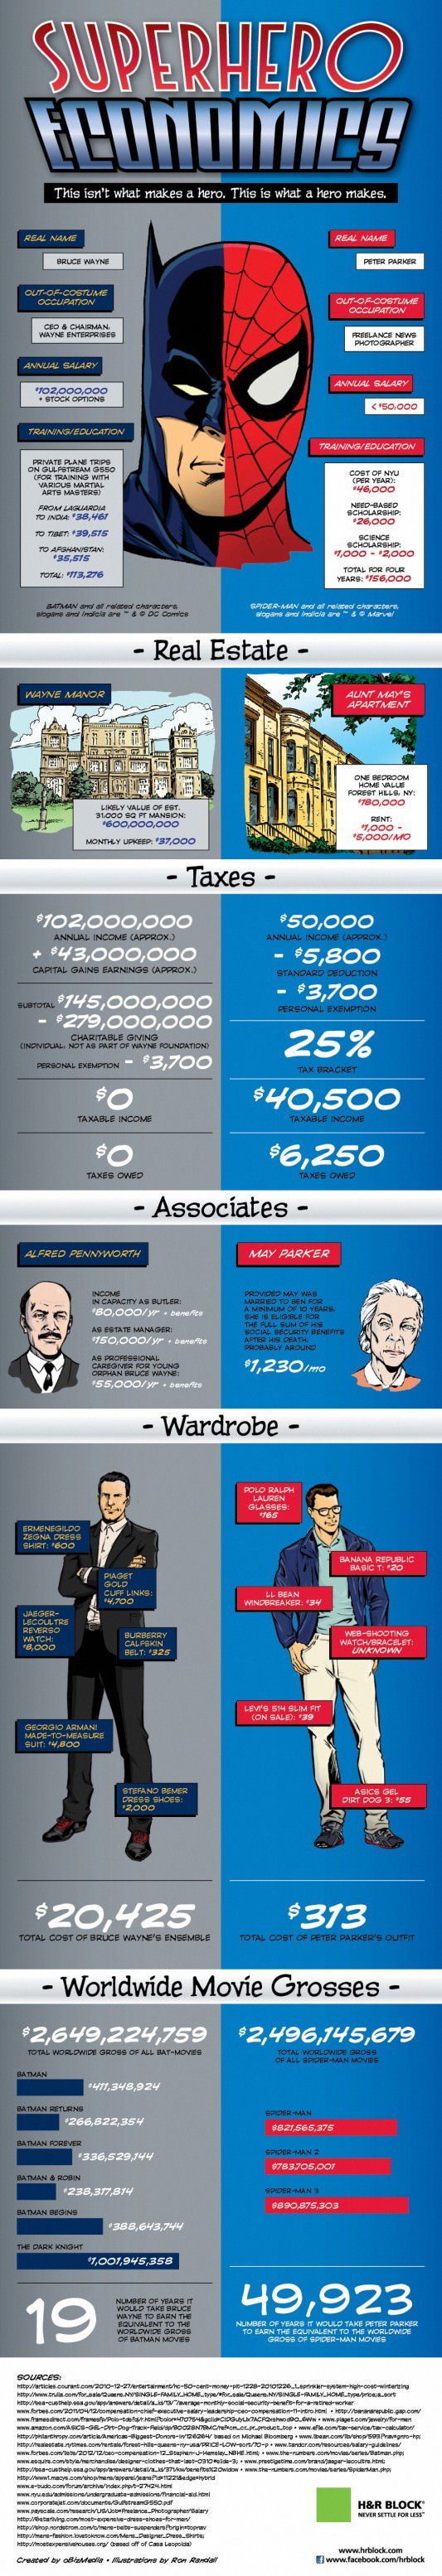 Superhero Economics Infographic